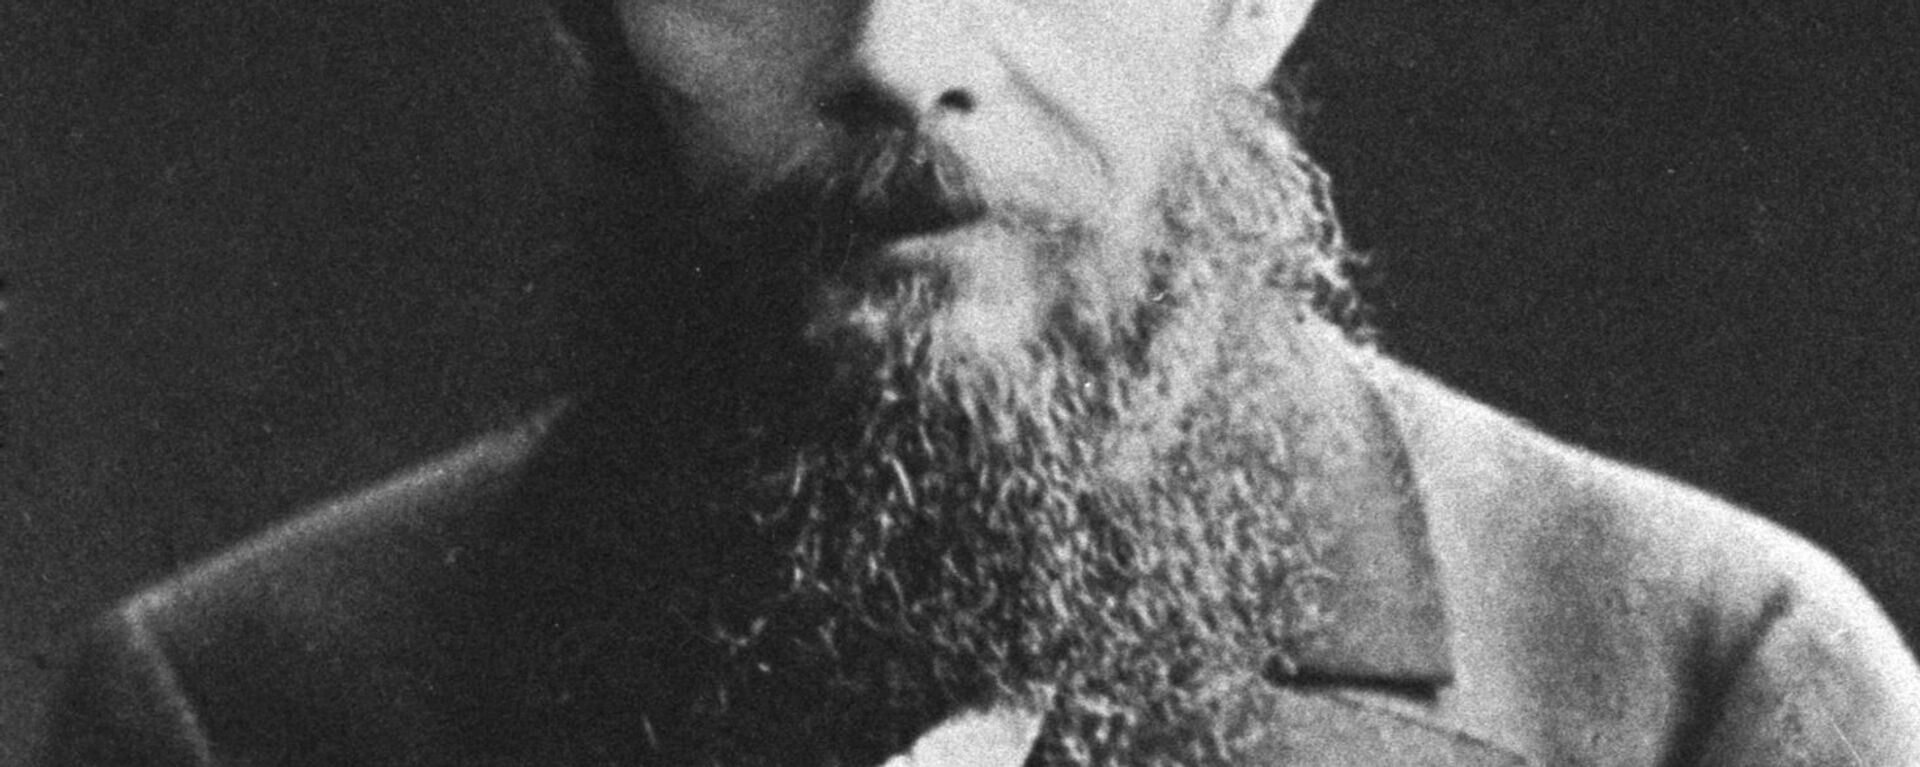 Fiódor Dostoyevski, escritor ruso - Sputnik Mundo, 1920, 16.12.2015